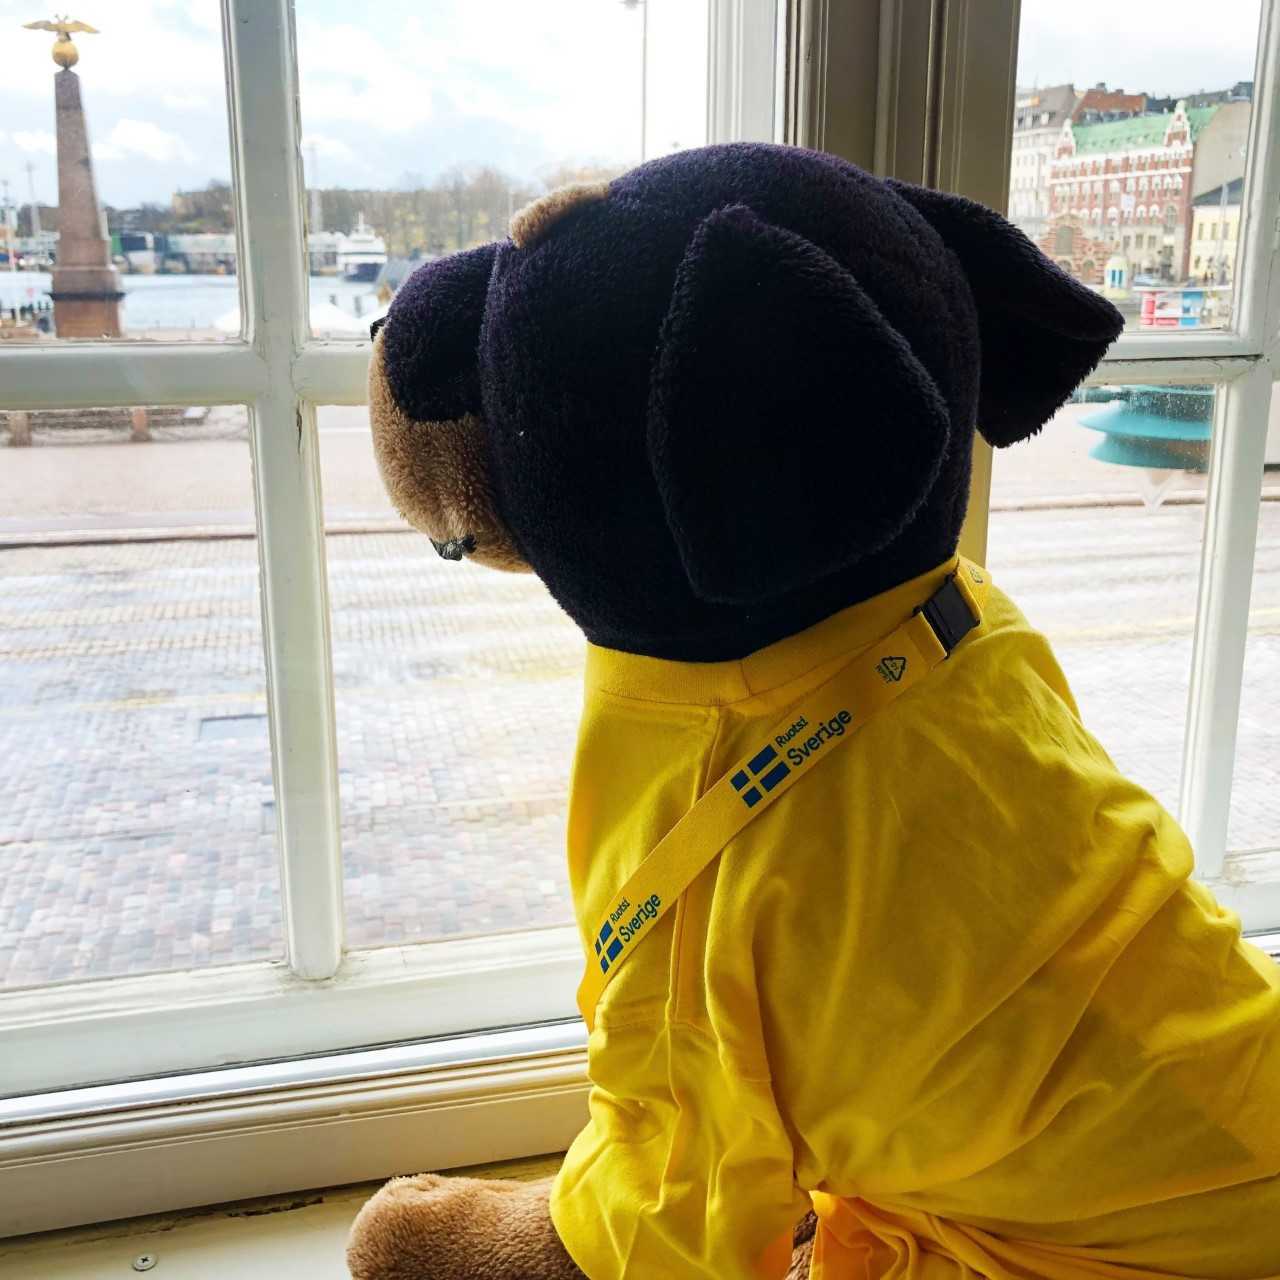 Kuva 2. Siniseen ja keltaiseen puettu pehmokoira “Rocky” katsoo ulos Ruotsin Helsingin suurlähetystön ikkunasta. Kuvan lähde: Ruotsin suurlähetystö.